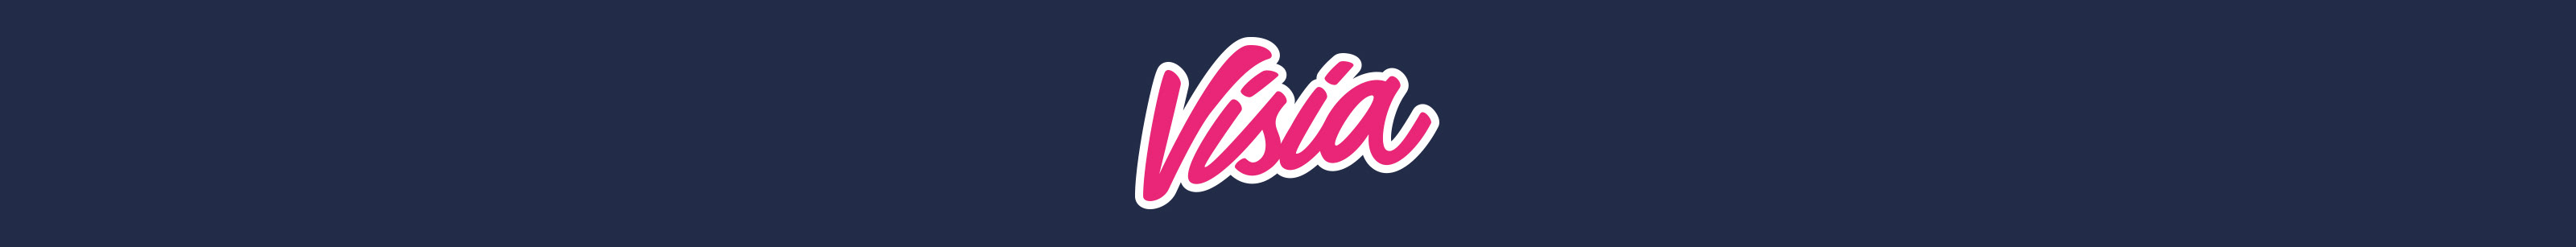 Visia Media's profile banner